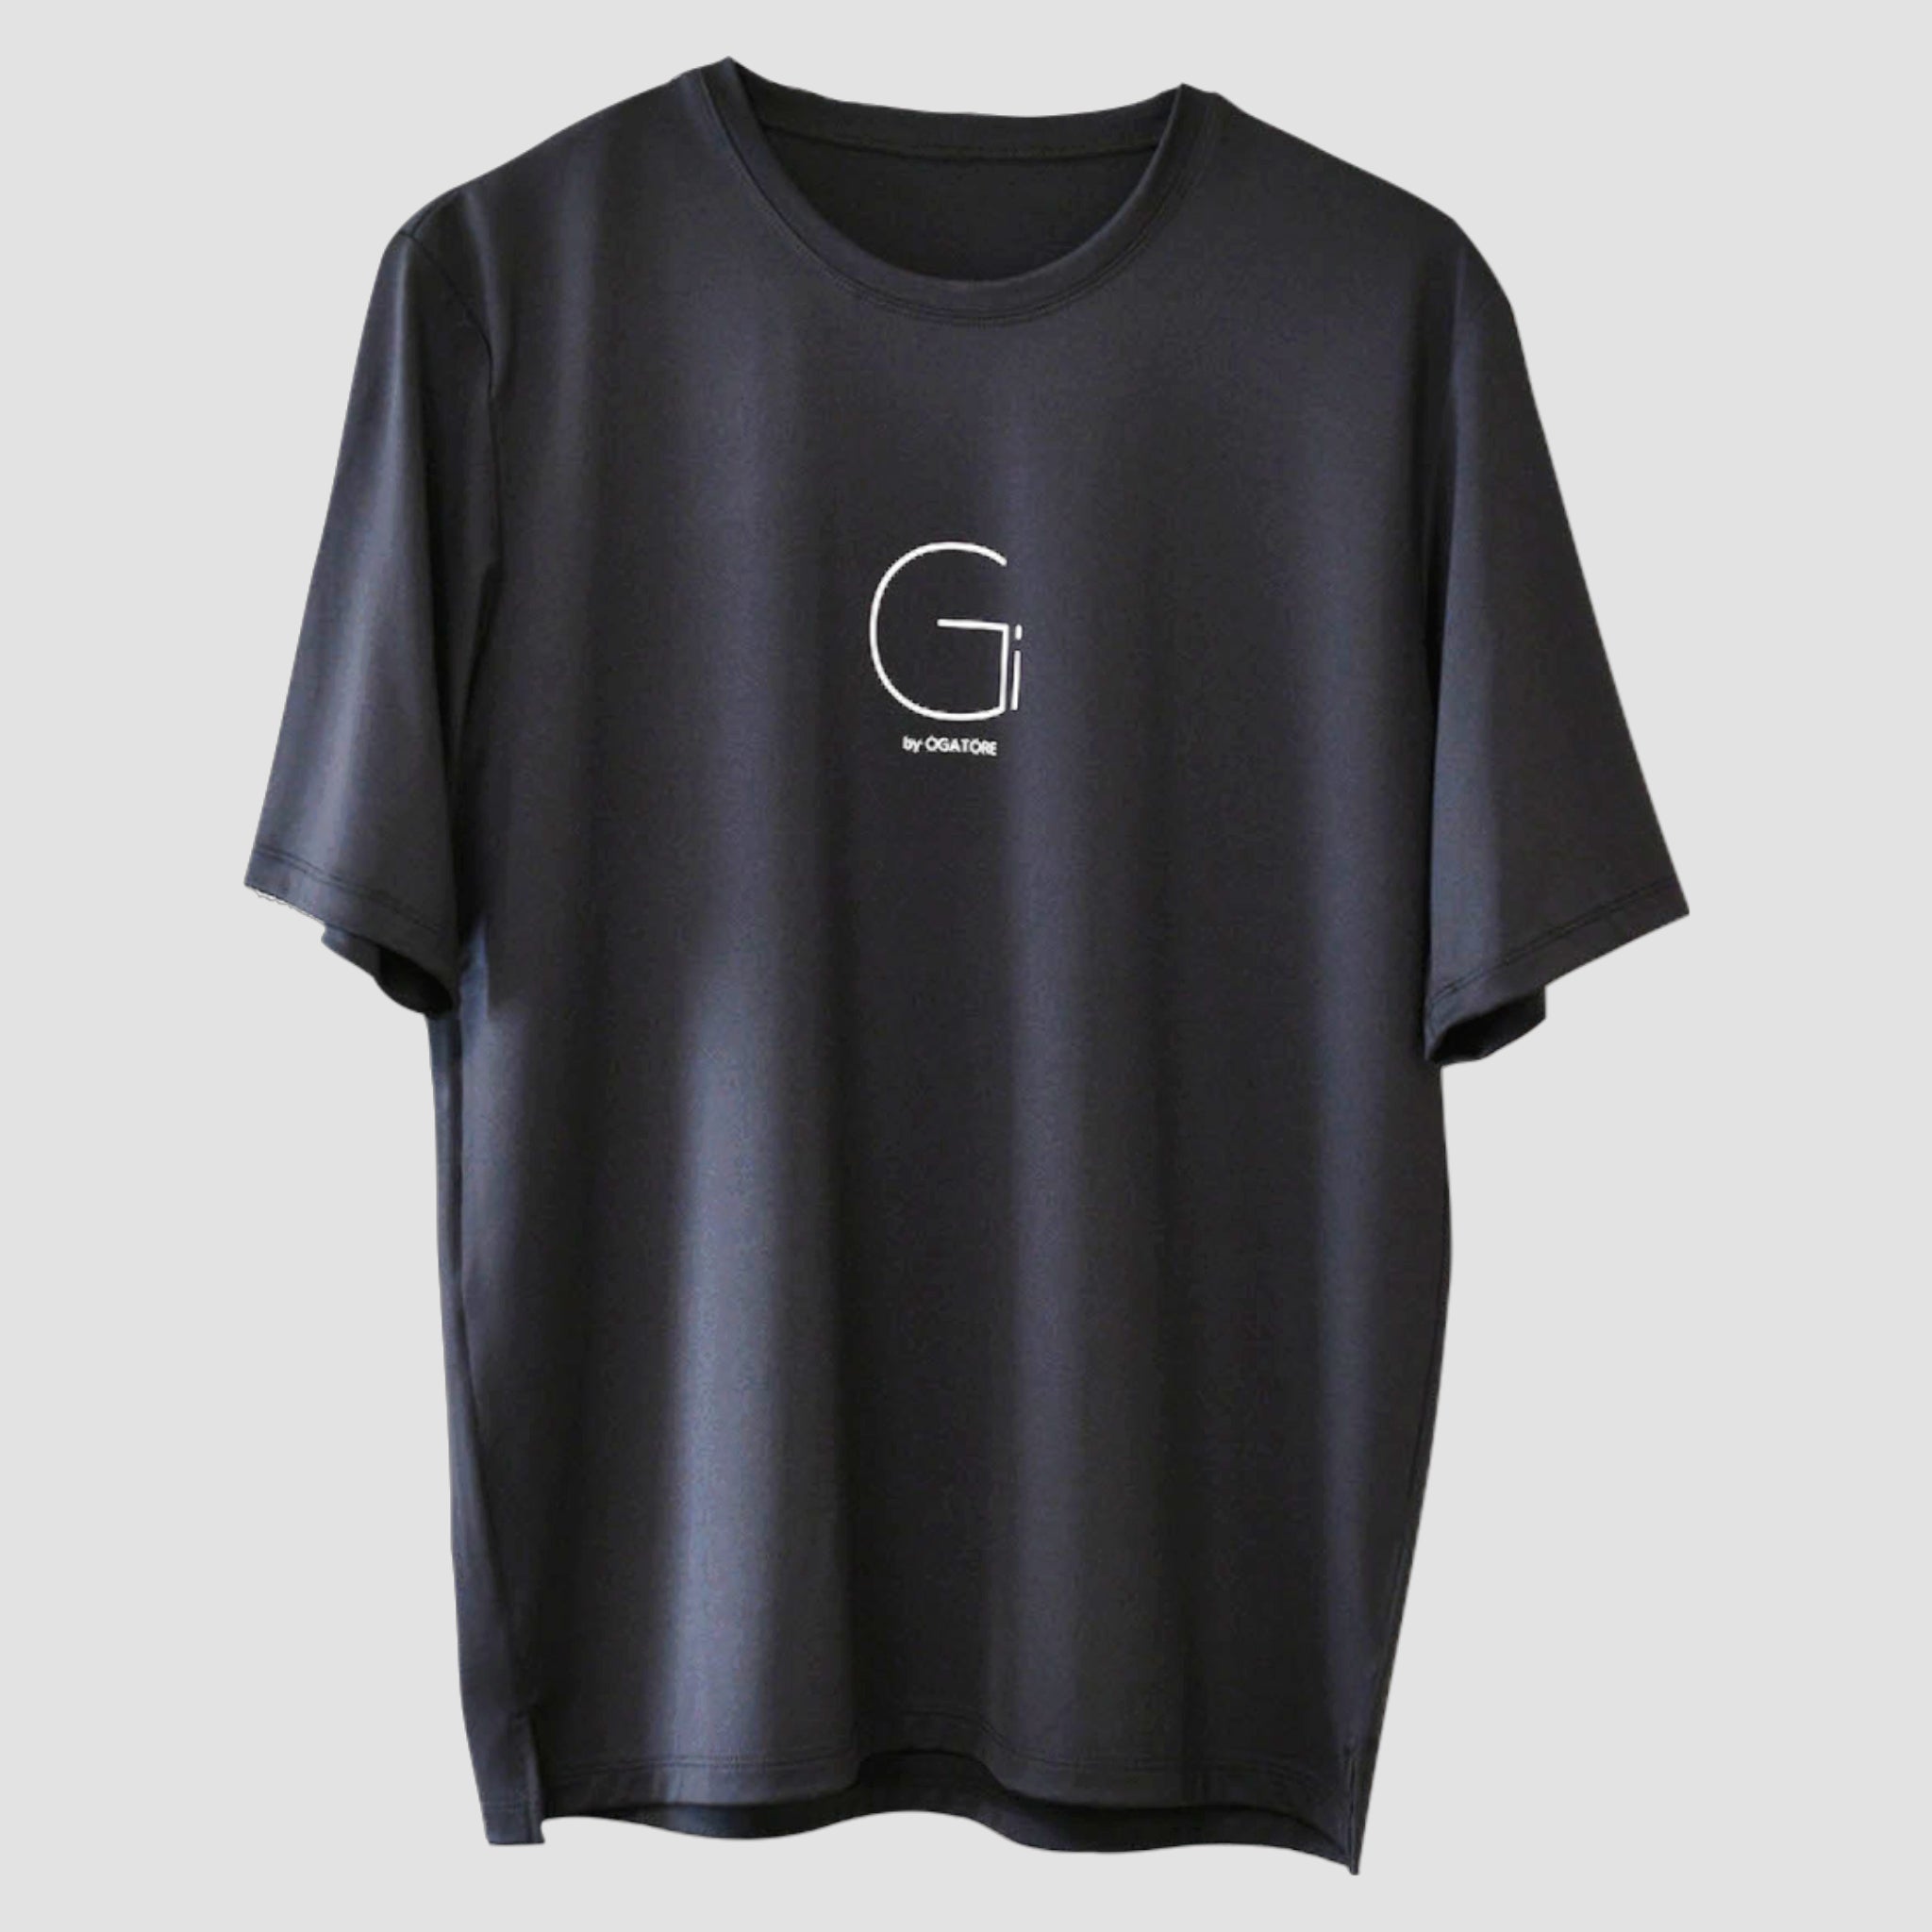 Gi Tシャツ ストレッチ専用 Tシャツ 気仙沼製造 在庫限り